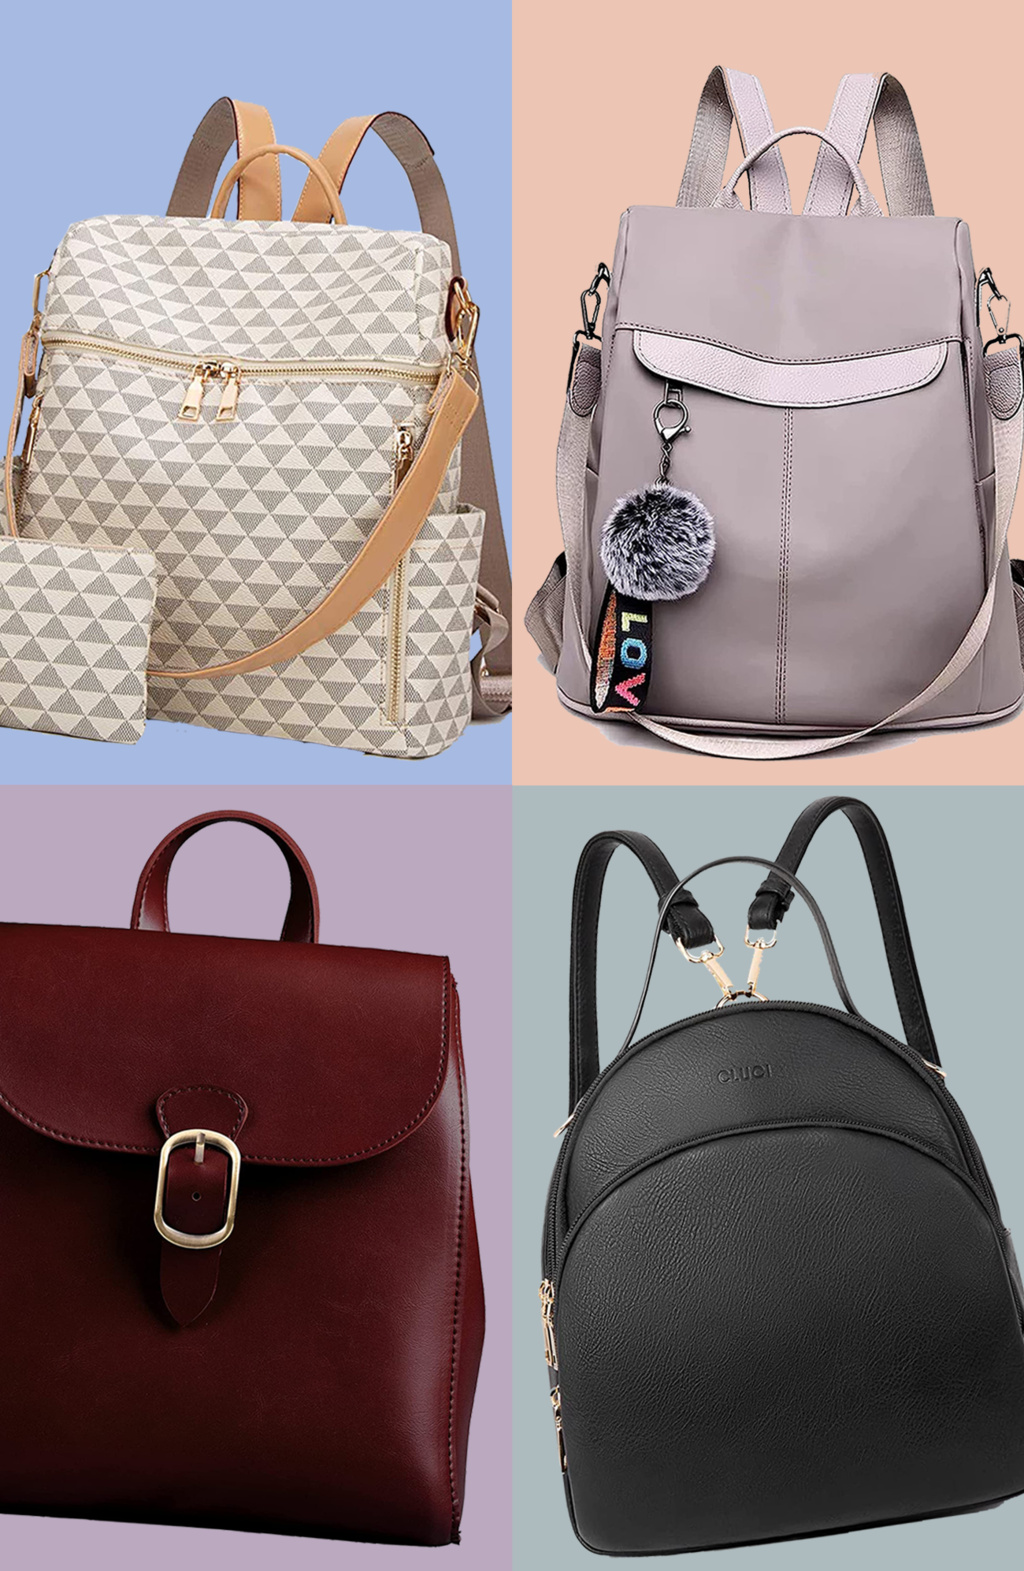 SHAMRIZ Women/Girls Round Sling Bag | Crossbody Bag : Amazon.in: Fashion